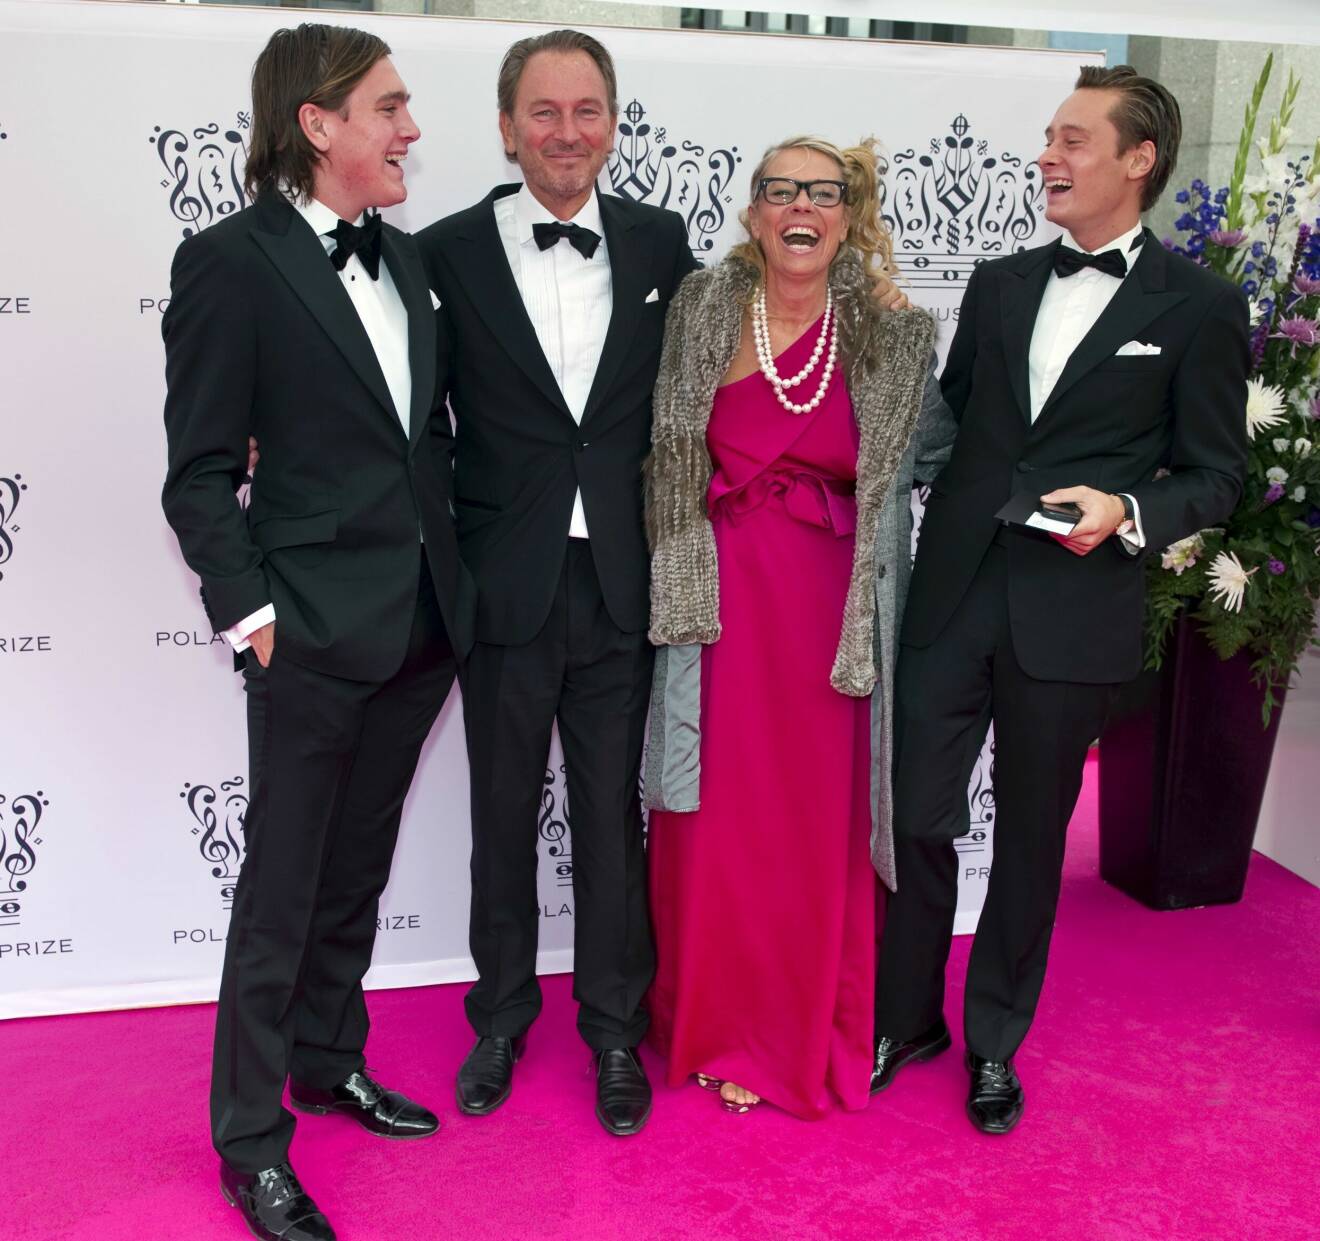 Tomas på bankett 2010 med hustru Marie och sönerna Theo och John. Hela familjen ler glatt.